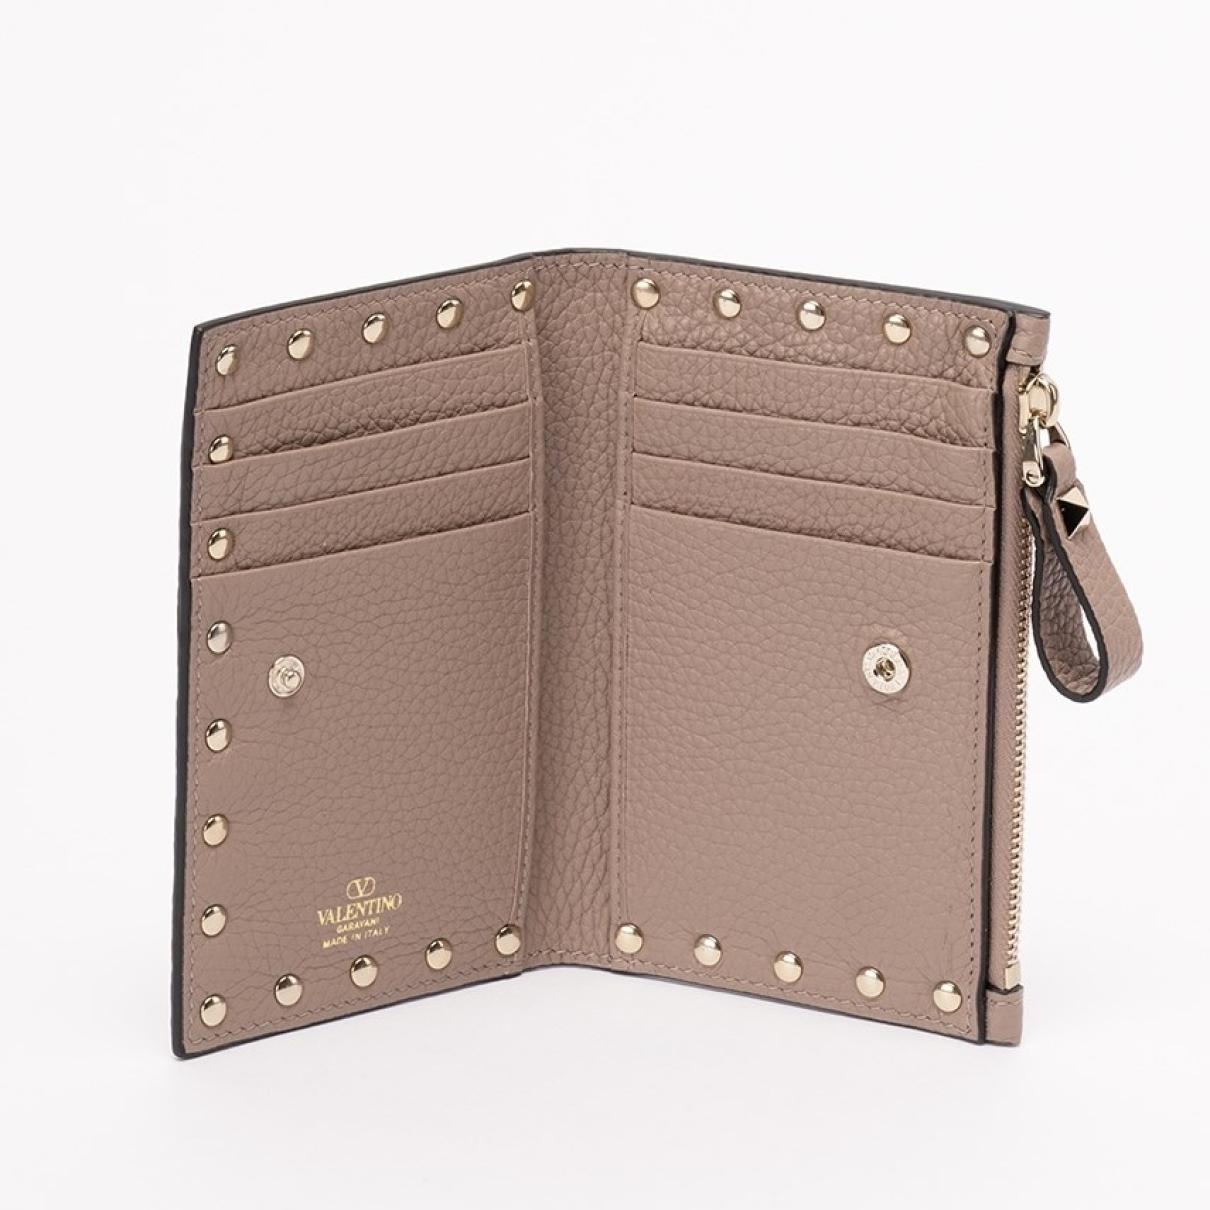 Rockstud leather wallet - 5